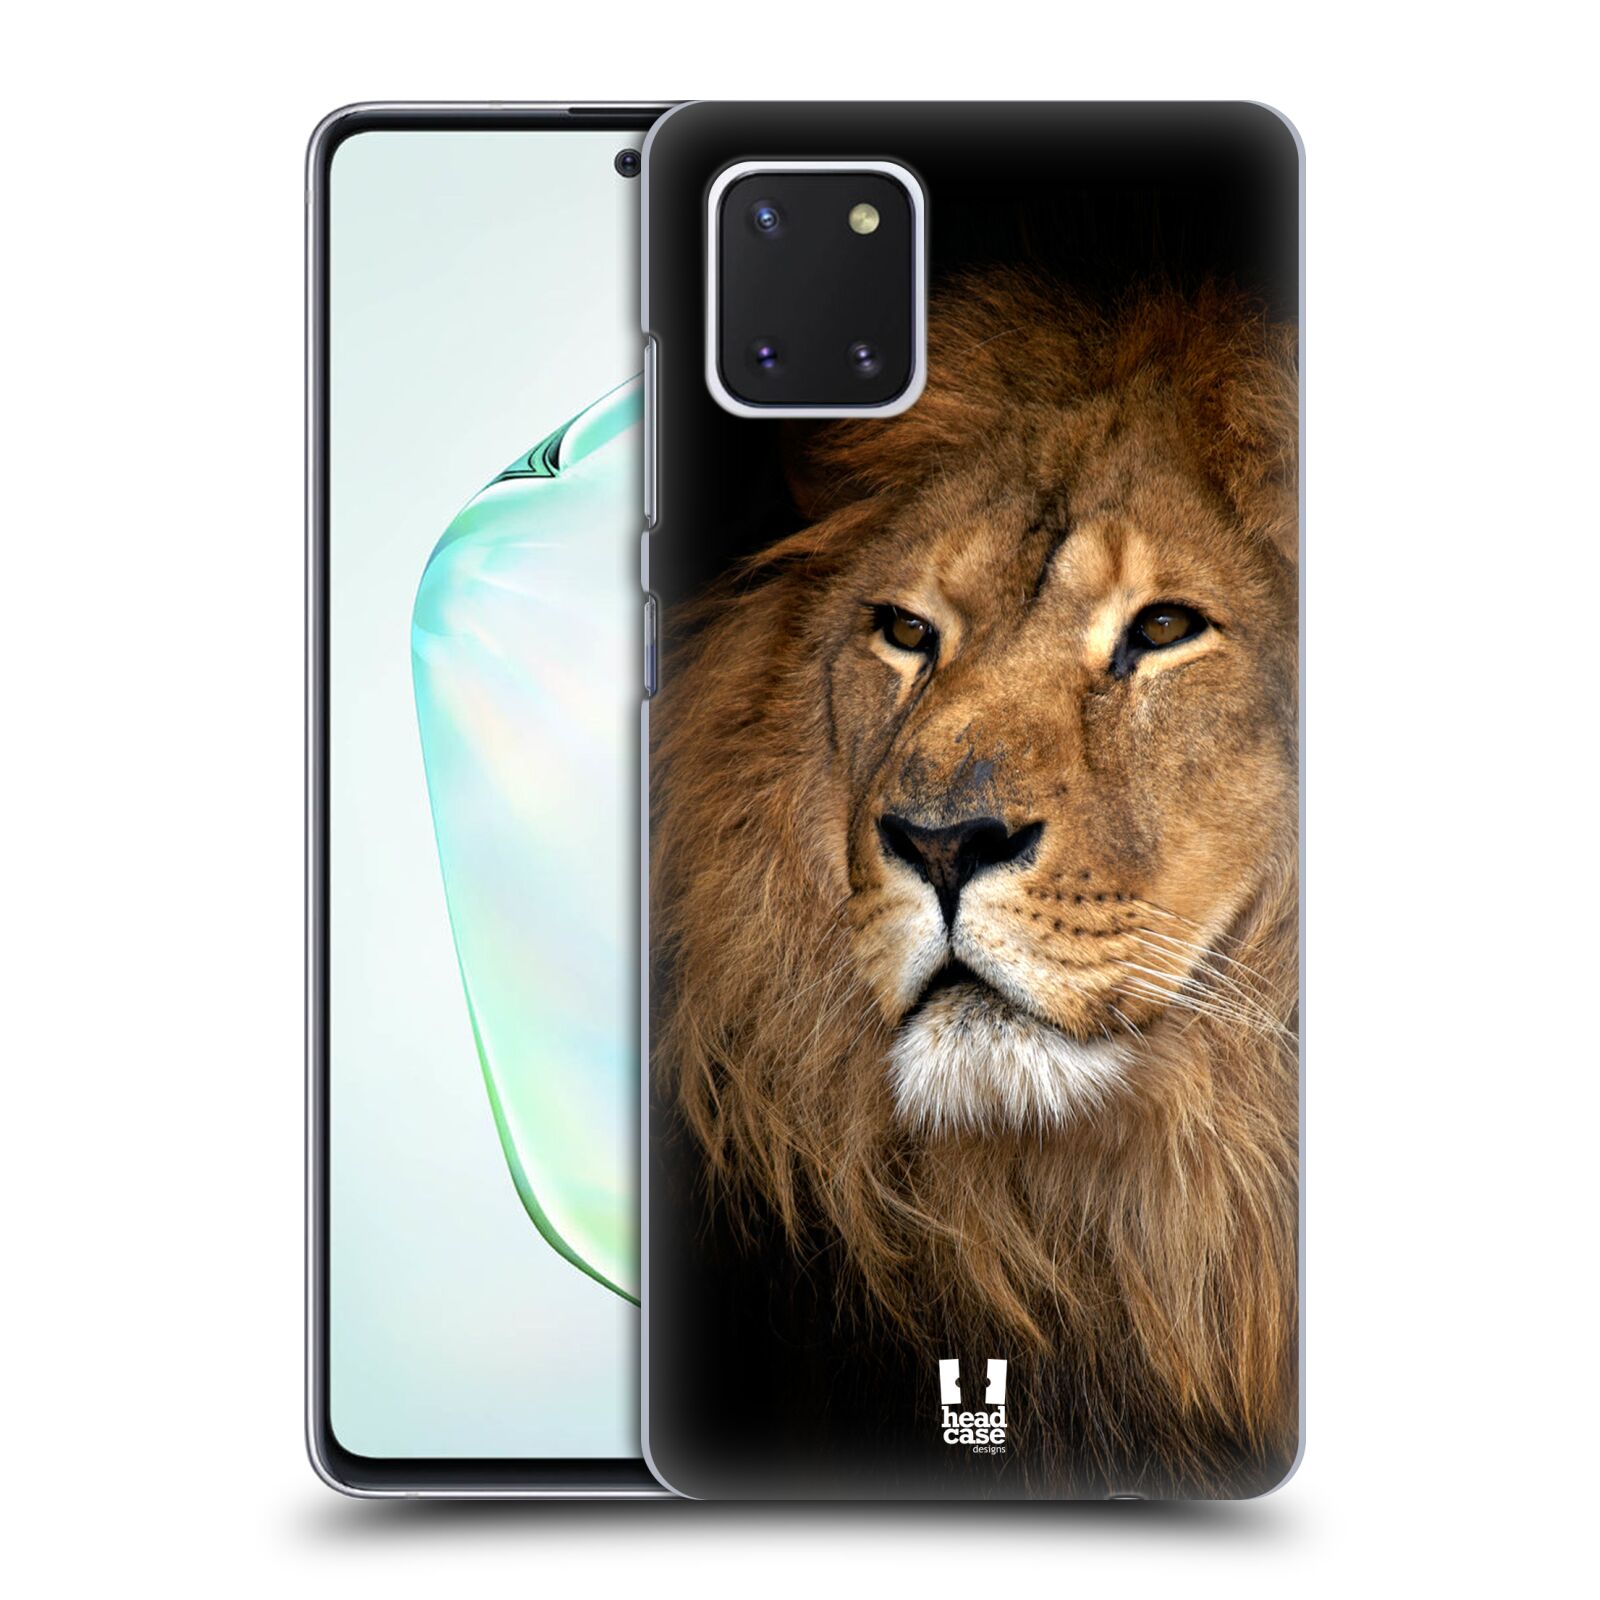 Zadní obal pro mobil Samsung Galaxy Note 10 Lite - HEAD CASE - Svět zvířat král zvířat Lev